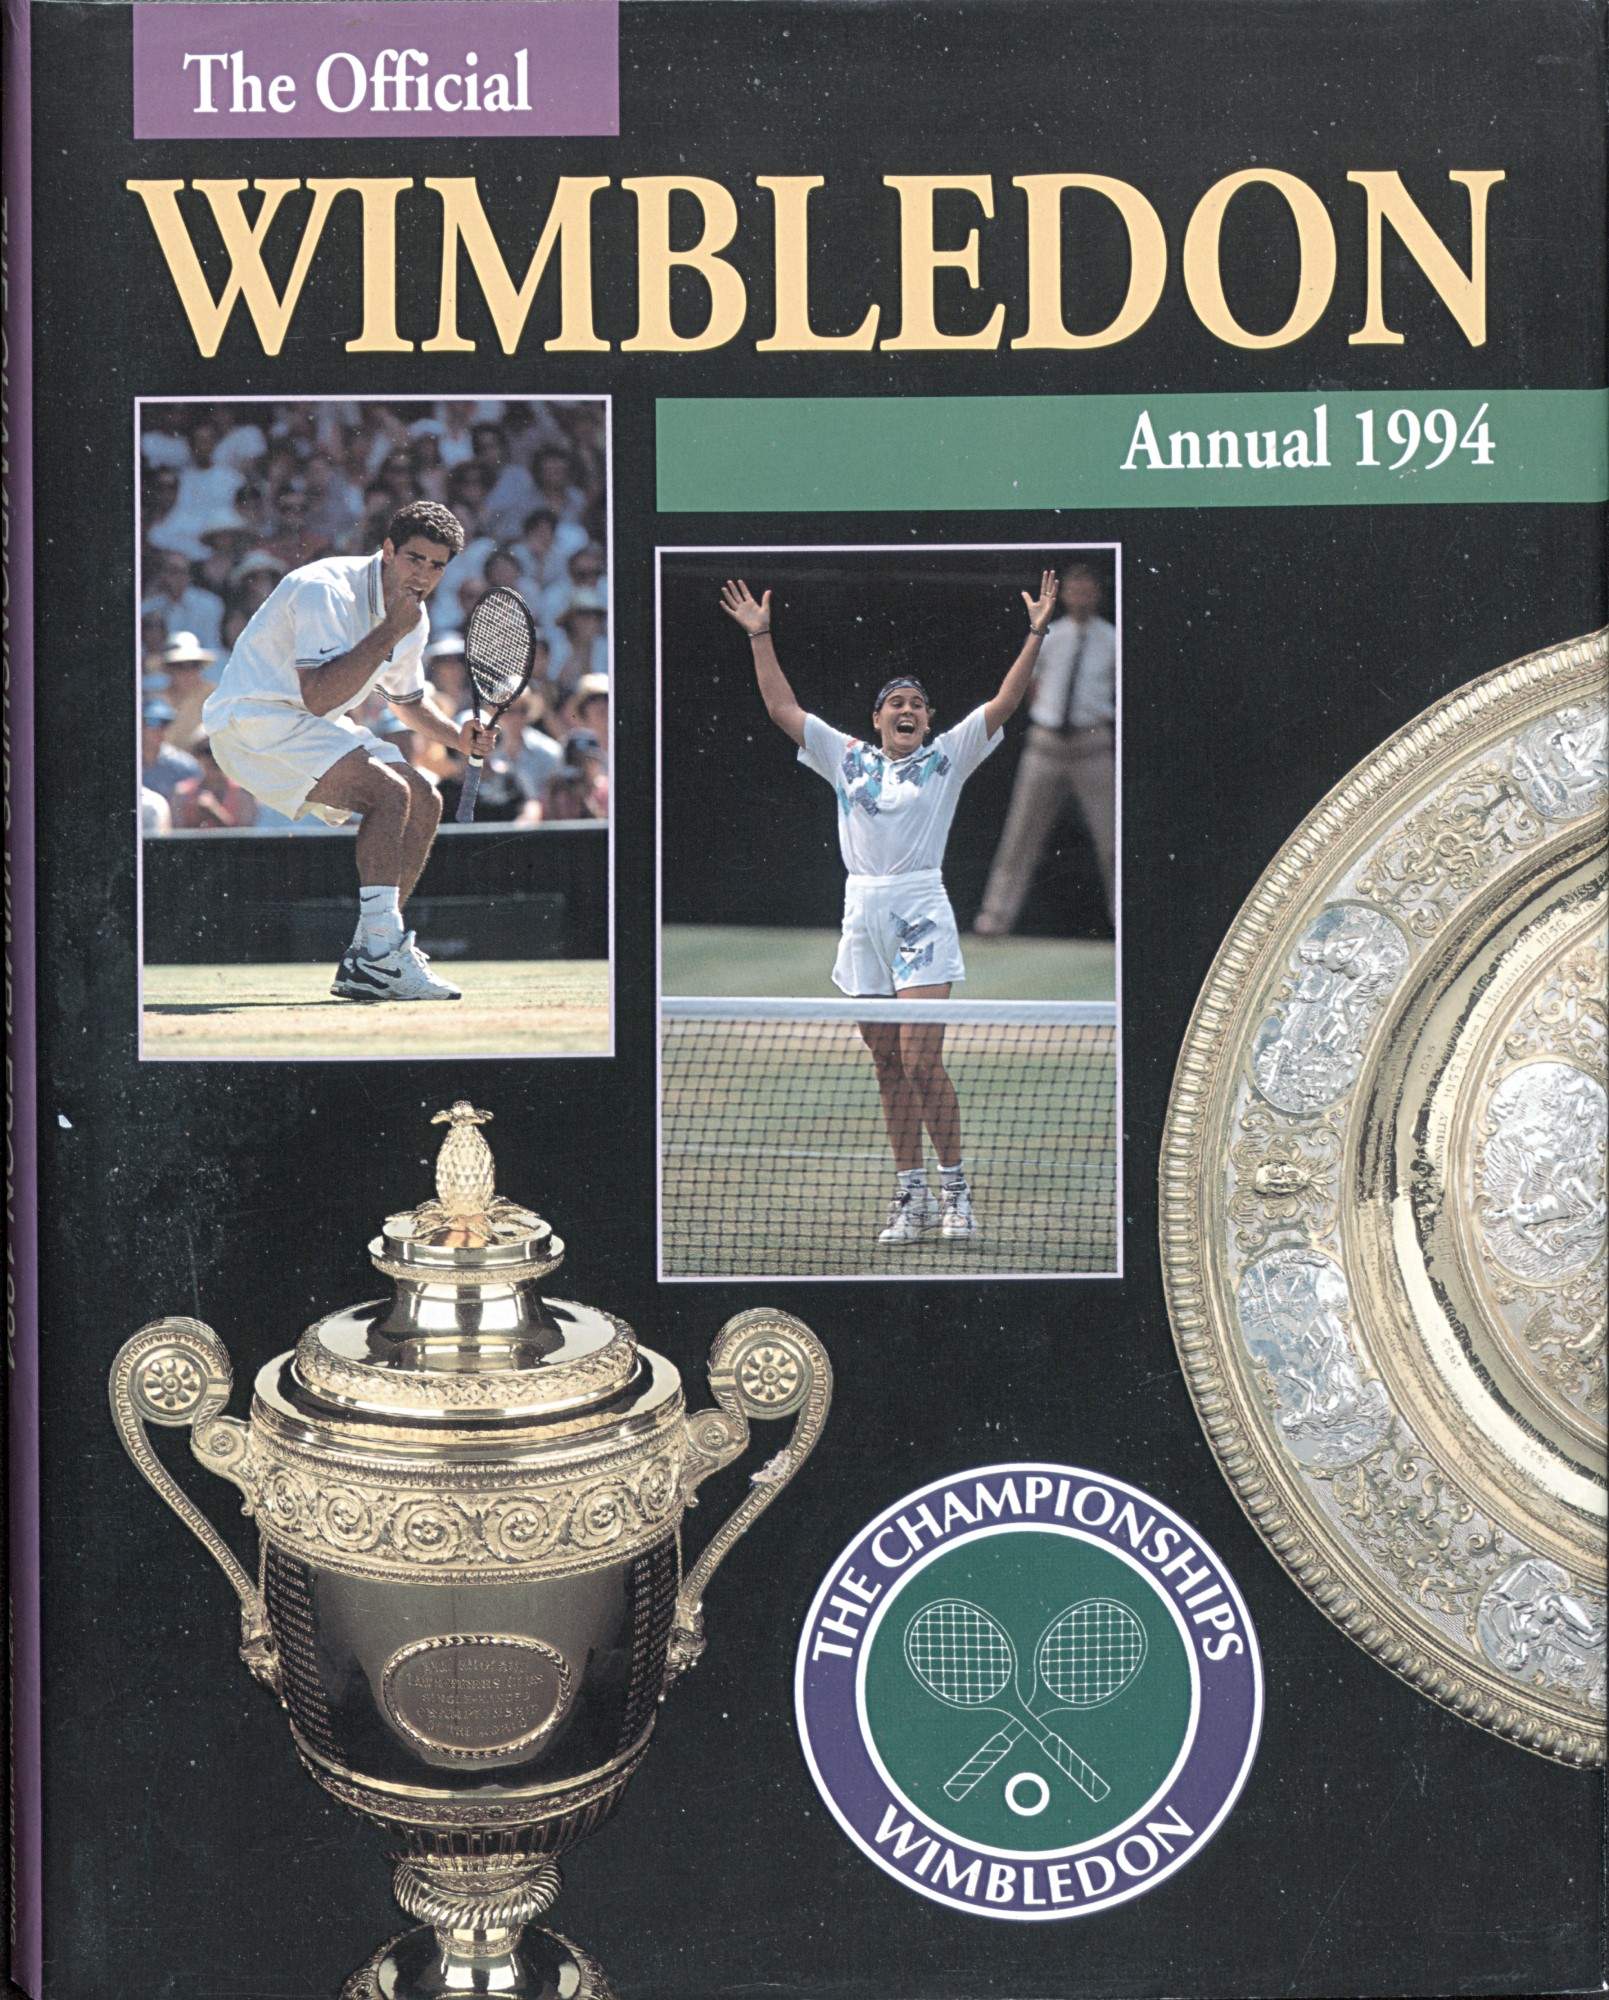 The Championships Wimbledon 1994